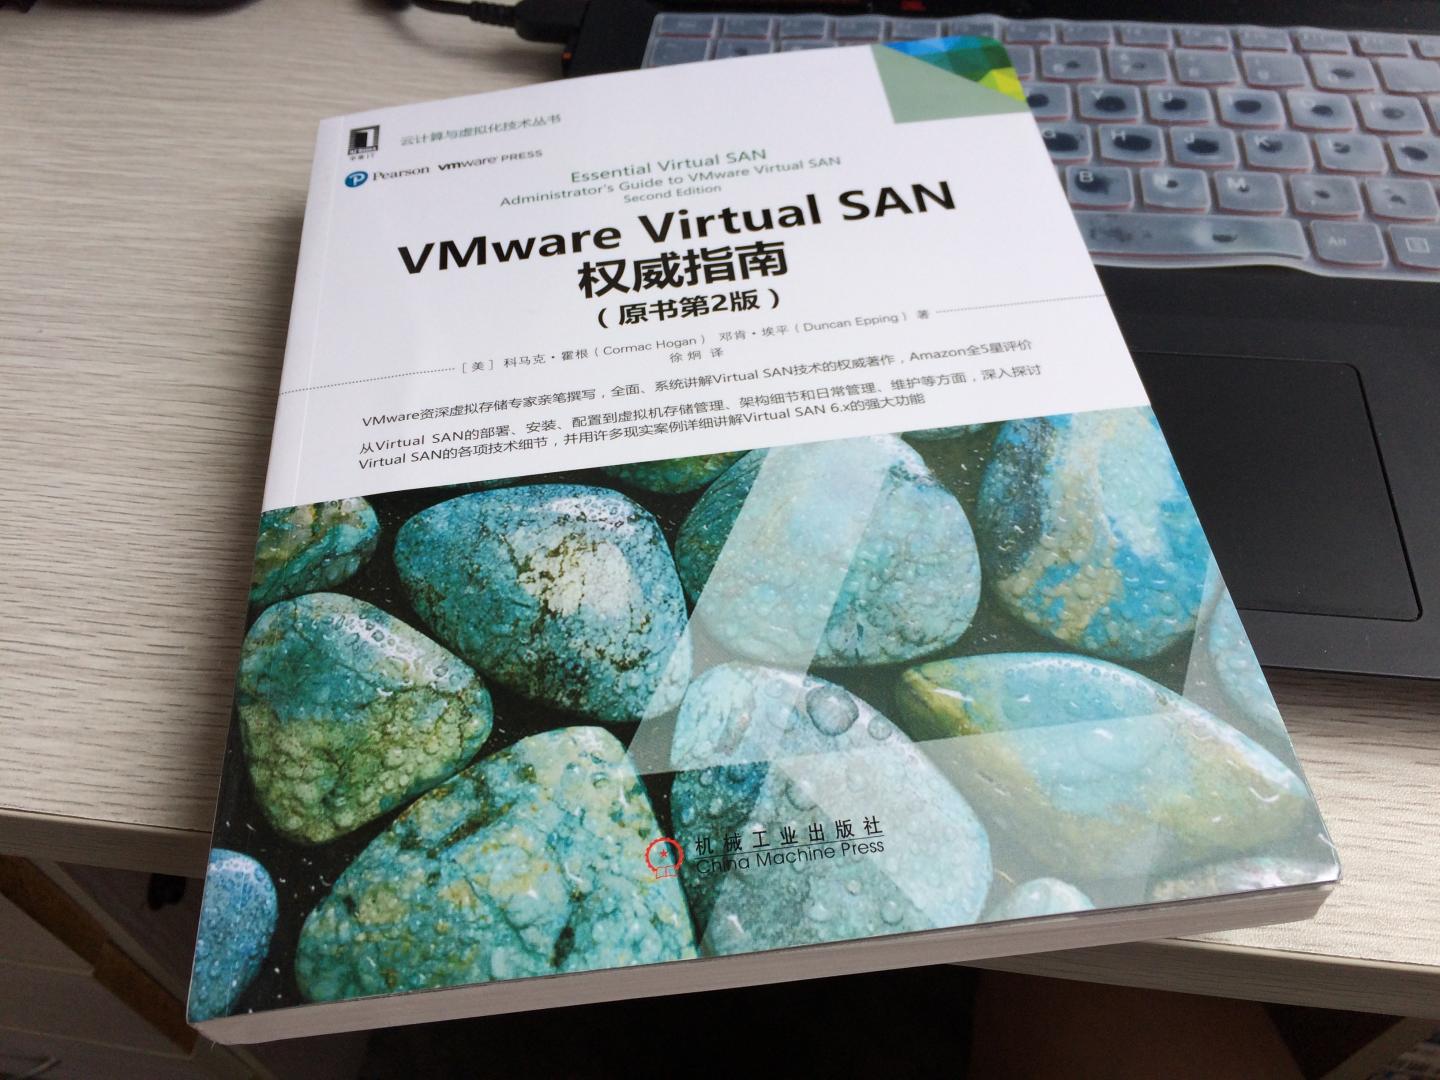 关于VSAN最新著作！虽然全书篇幅不是很厚，但是内容还是相当精华，对学习VMware VSAN的朋友很有帮助。